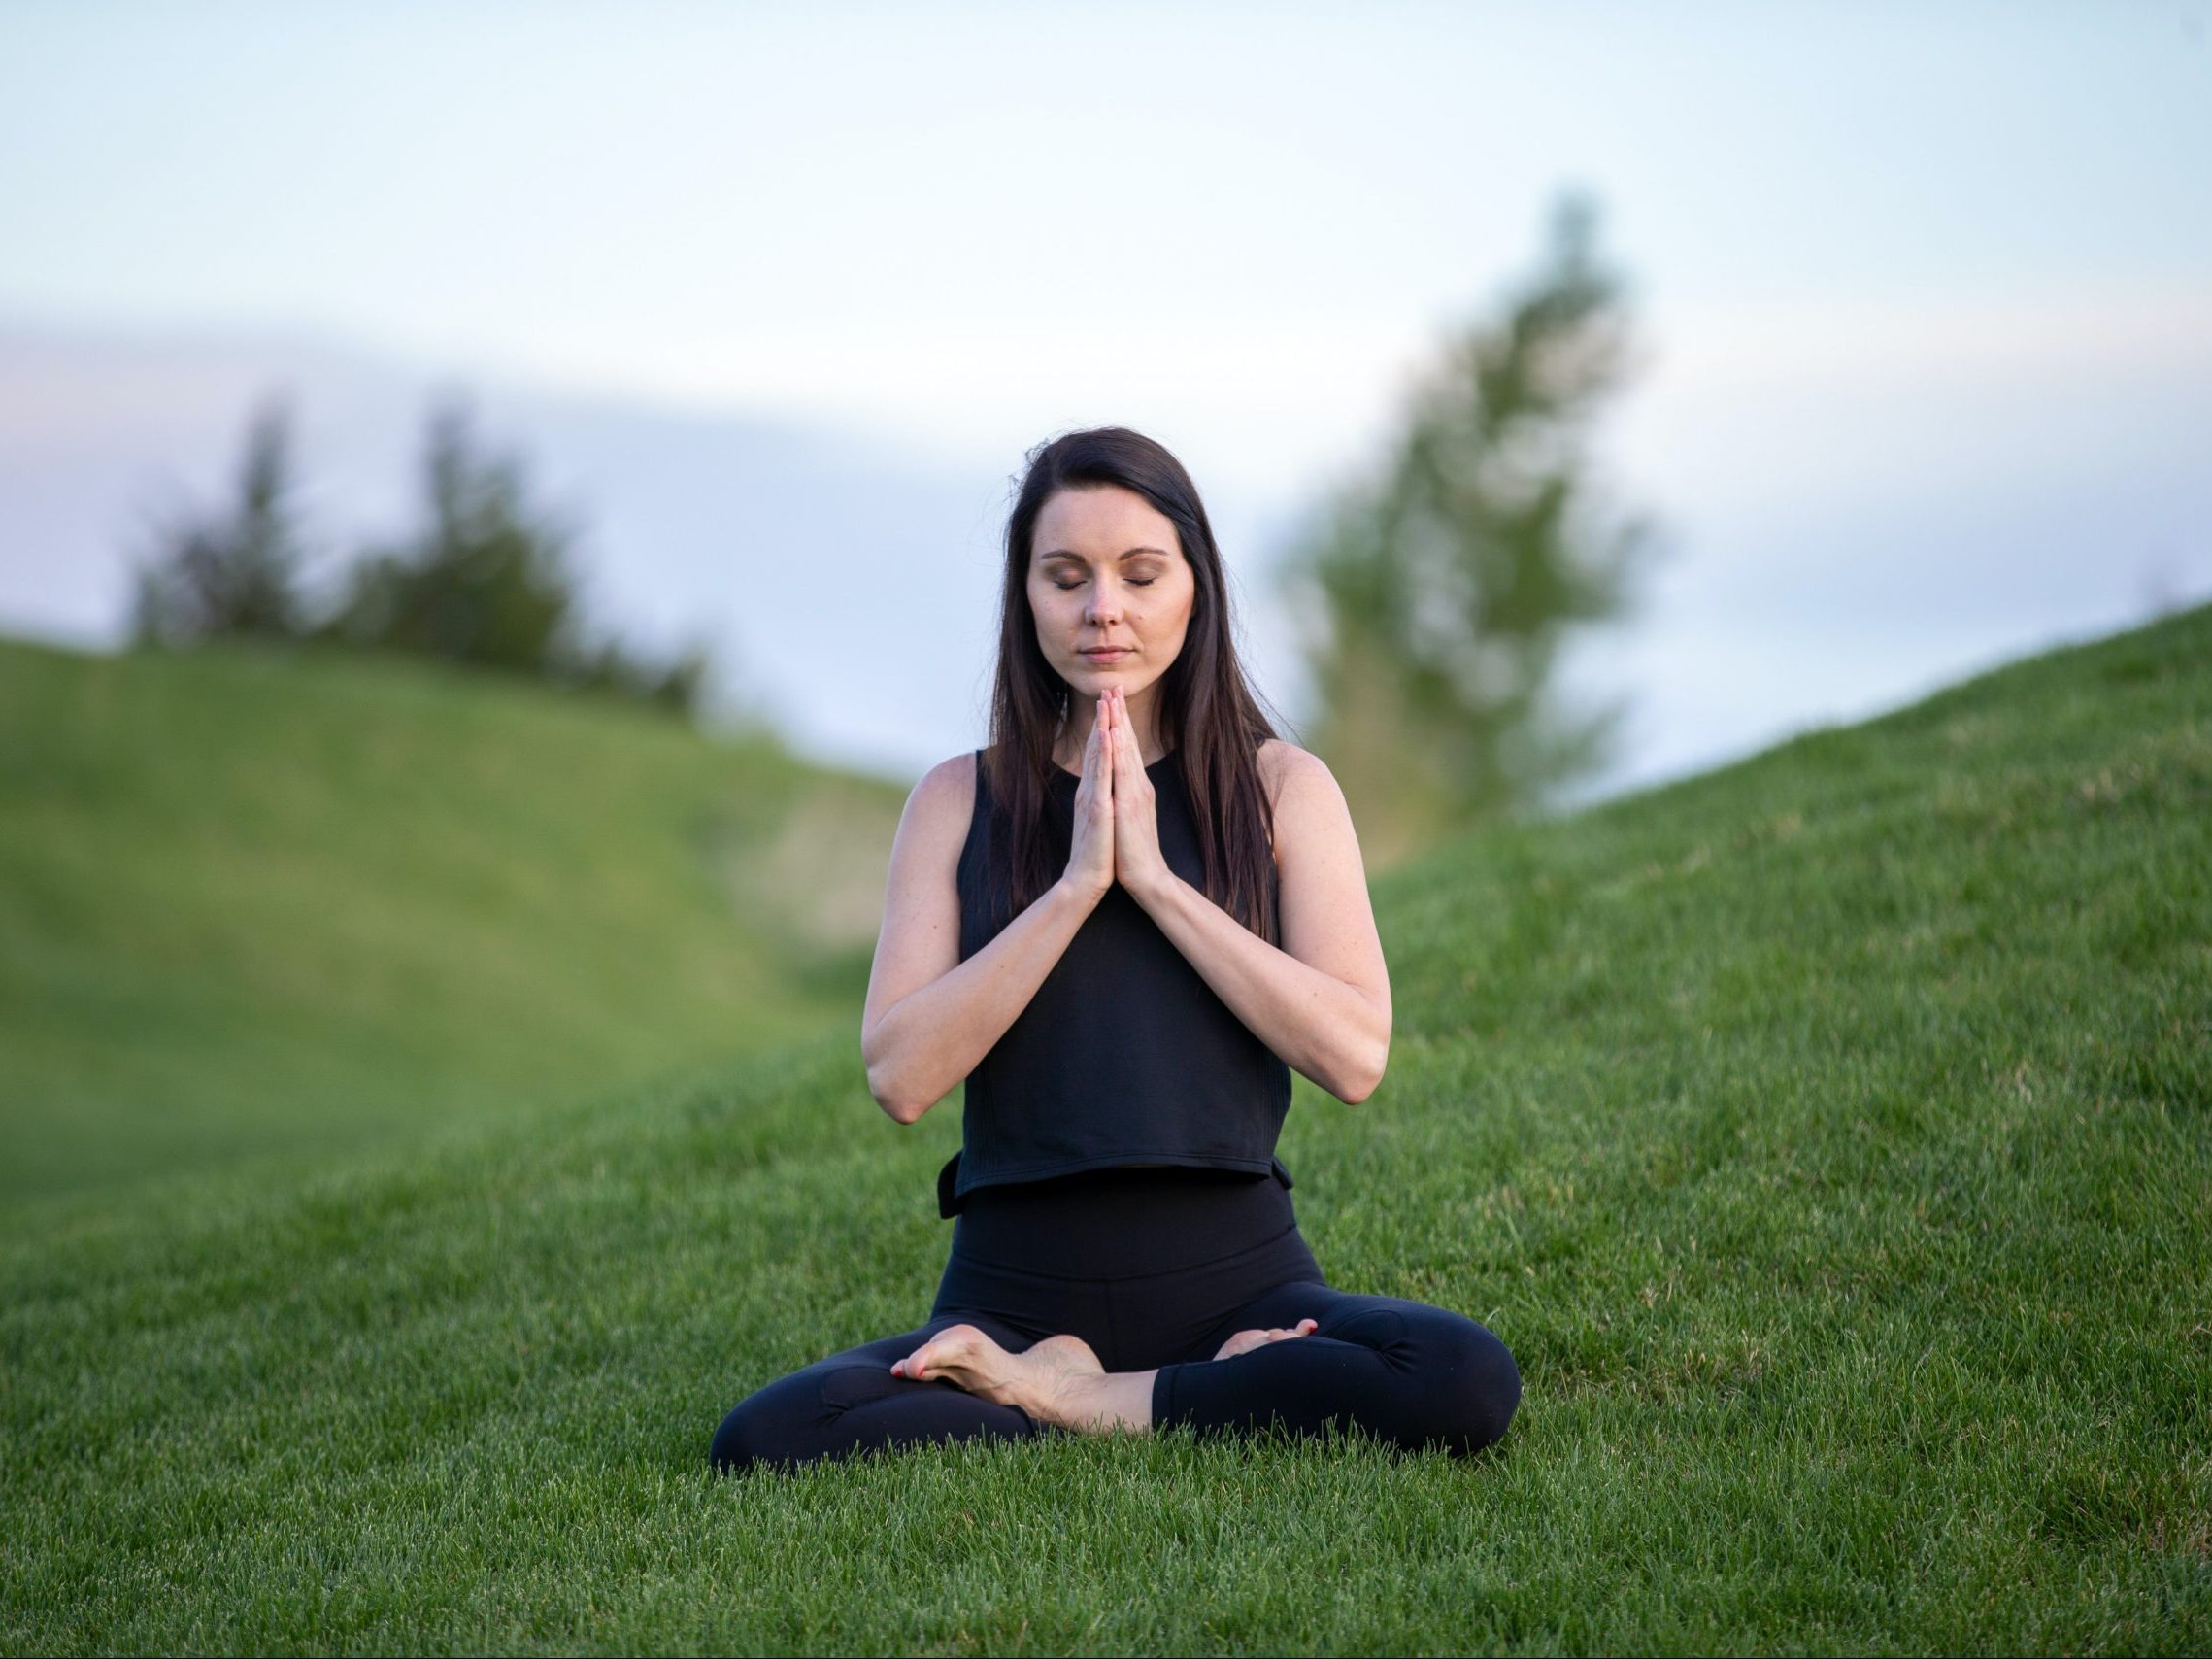 Αν αισθάνεσαι συχνά ναυτία, αυτές οι στάσεις yoga θα σε βοηθήσουν να την καταπολεμήσεις